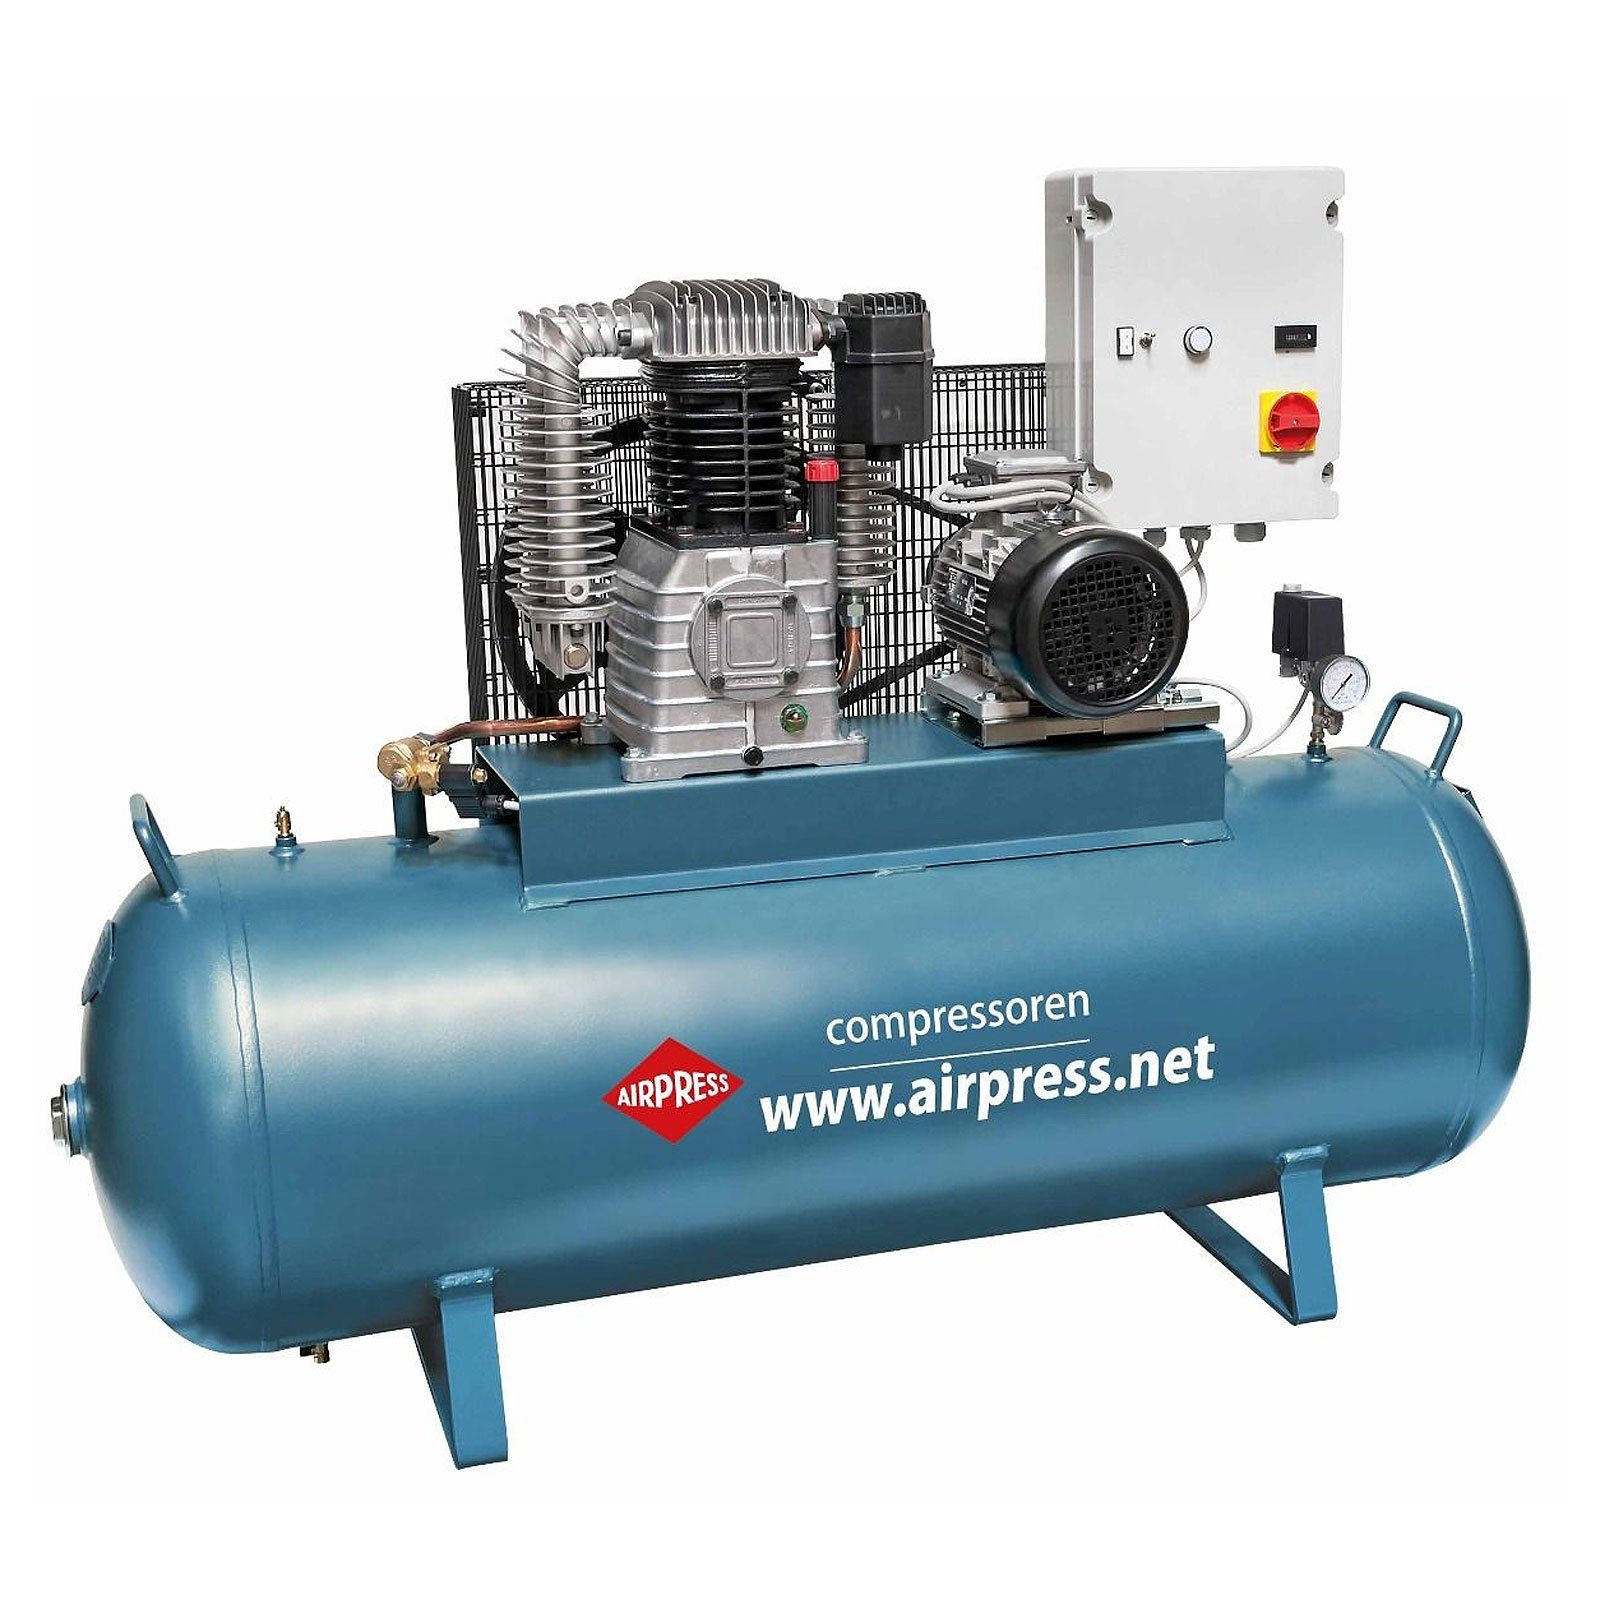 Airpress Kompressor Kompressor 5,5 PS 300 Typ Liter bar bar, 15 K300-700S 14 1 l, max. Stück 36525-N, 300